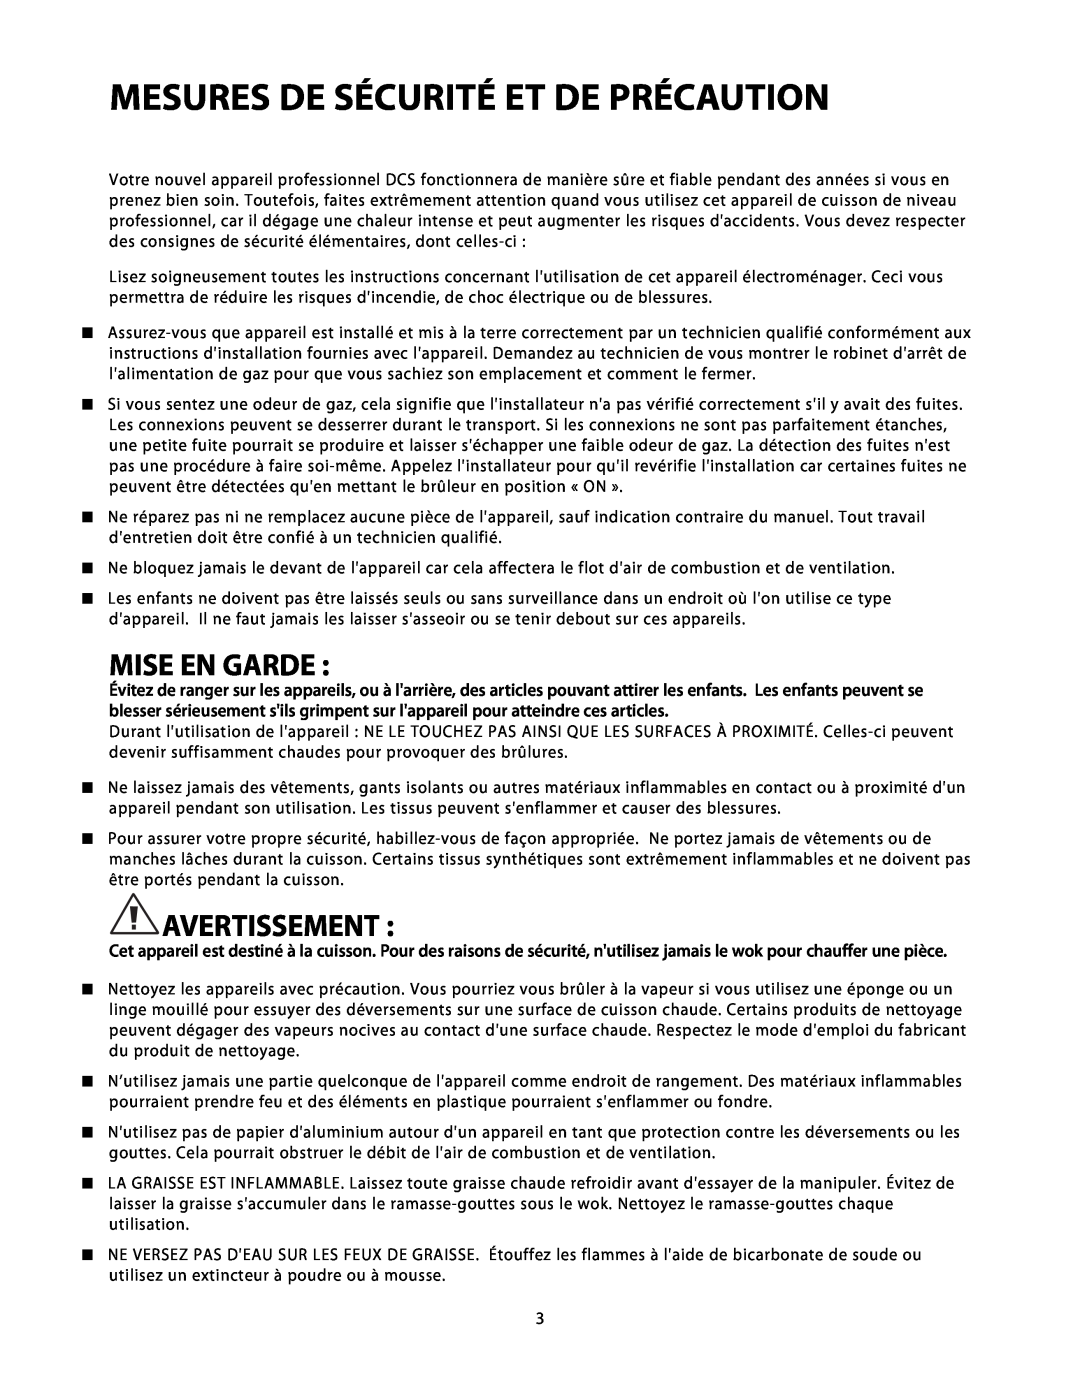 DCS C-24 installation instructions Mesures De Sécurité Et De Précaution, Mise En Garde, Avertissement 